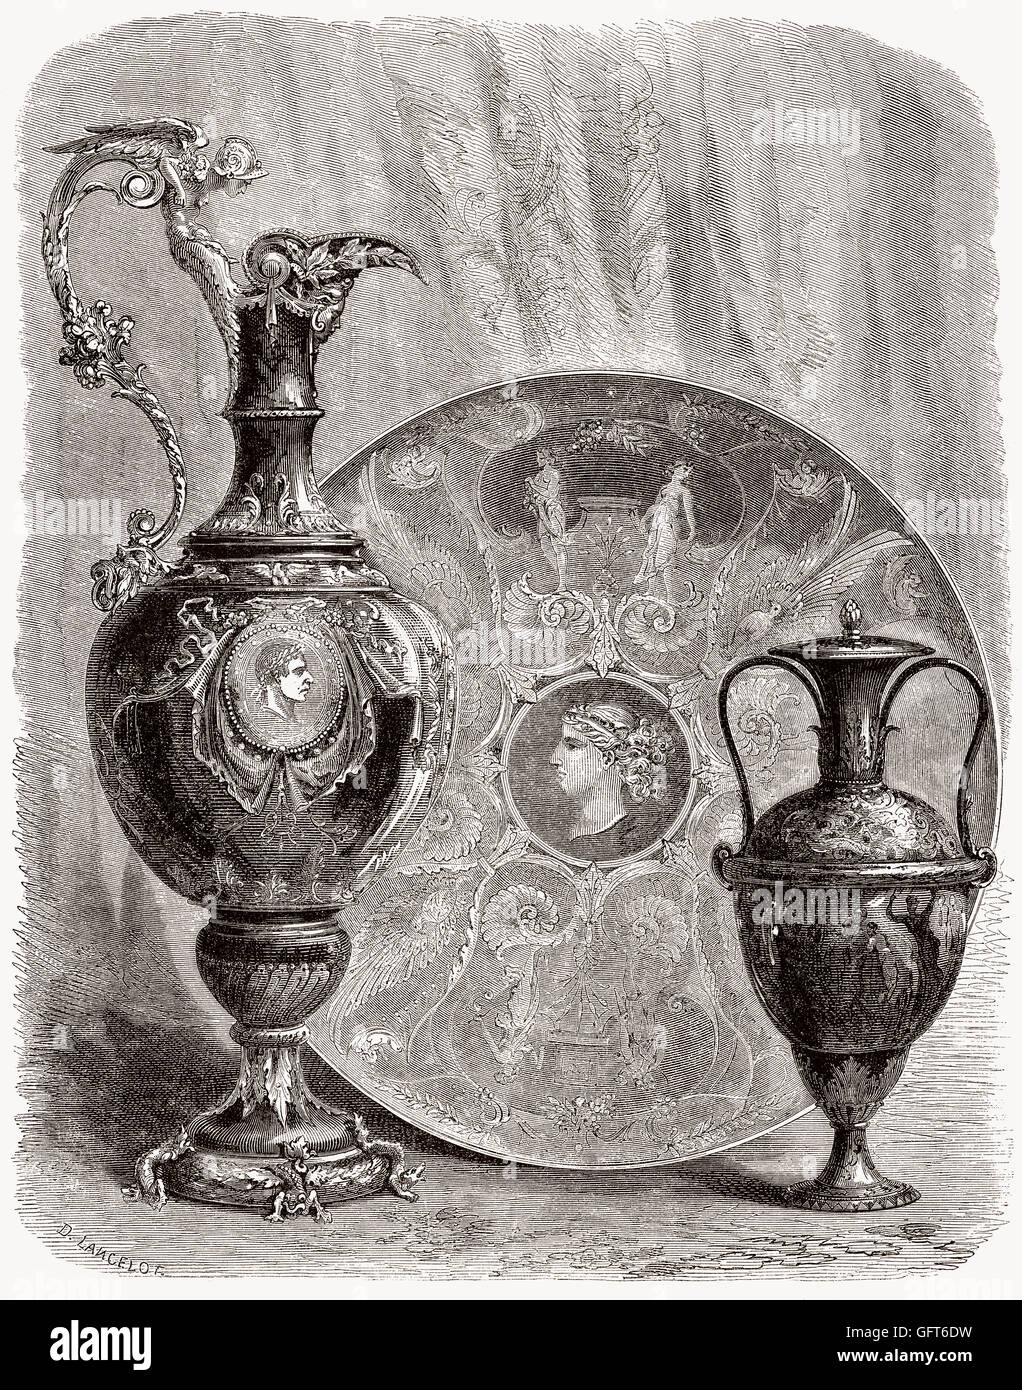 Fritware, or stone-paste from the manufacture nationale de Sèvres, Sèvres, Hauts-de-Seine, France, 19th century Stock Photo